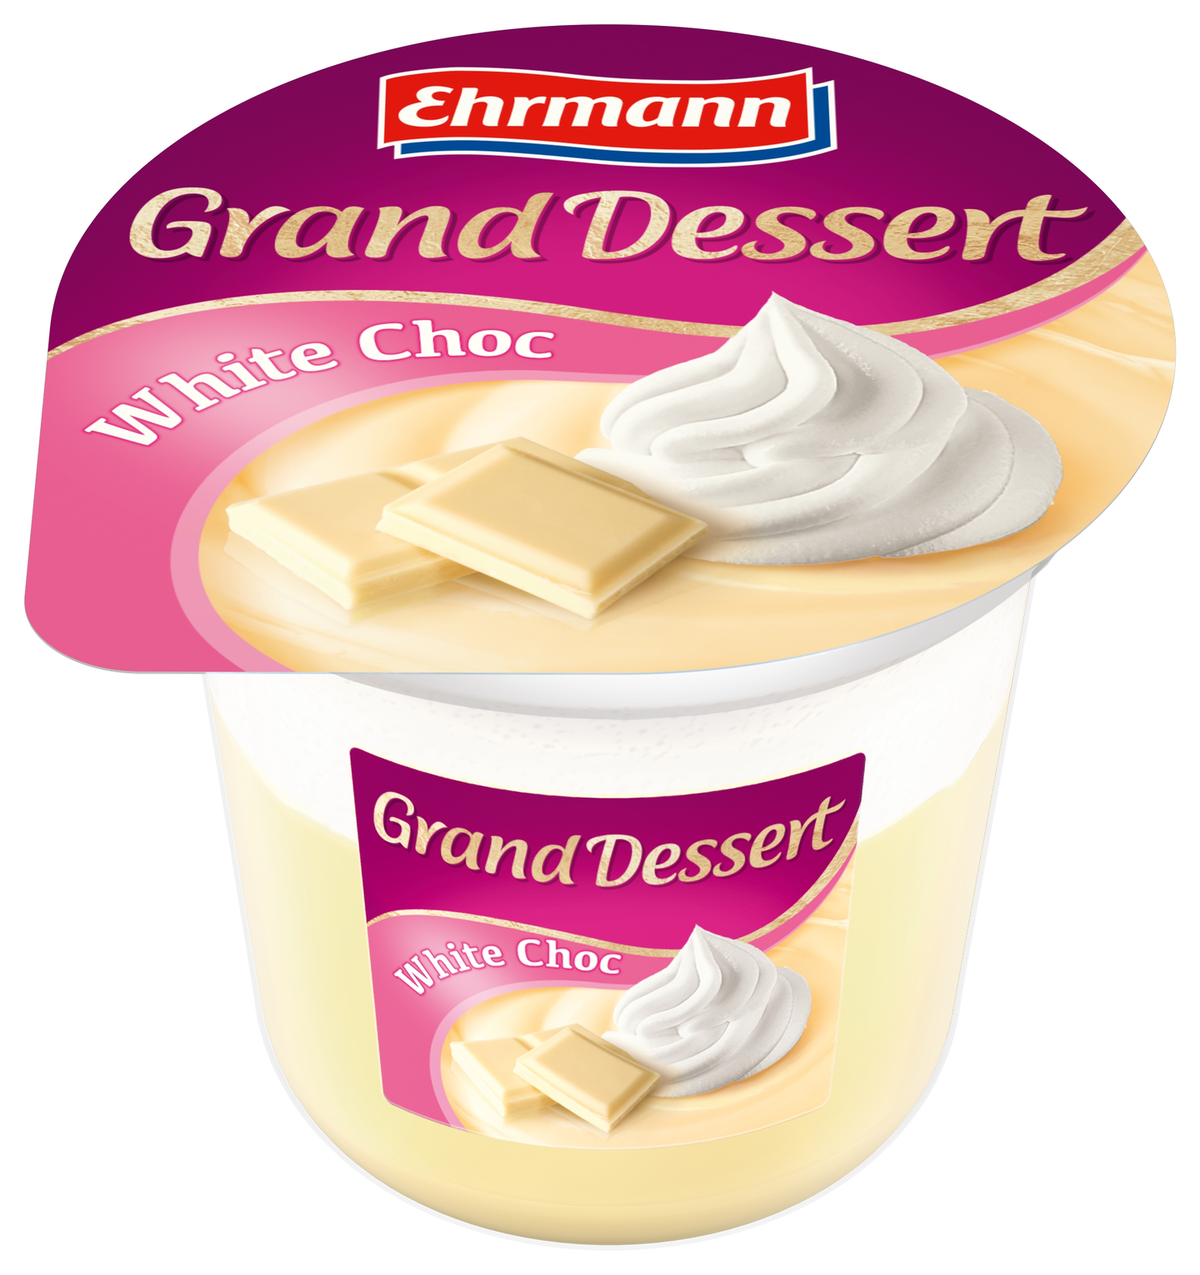 Шоколад grand. Пудинг Ehrmann Grand Dessert шоколад. Grand Desert пудинг шоколад. Пудинг Эрманн Гранд десерт 200г. Десерт Эрманн Гранд белый шоколад.